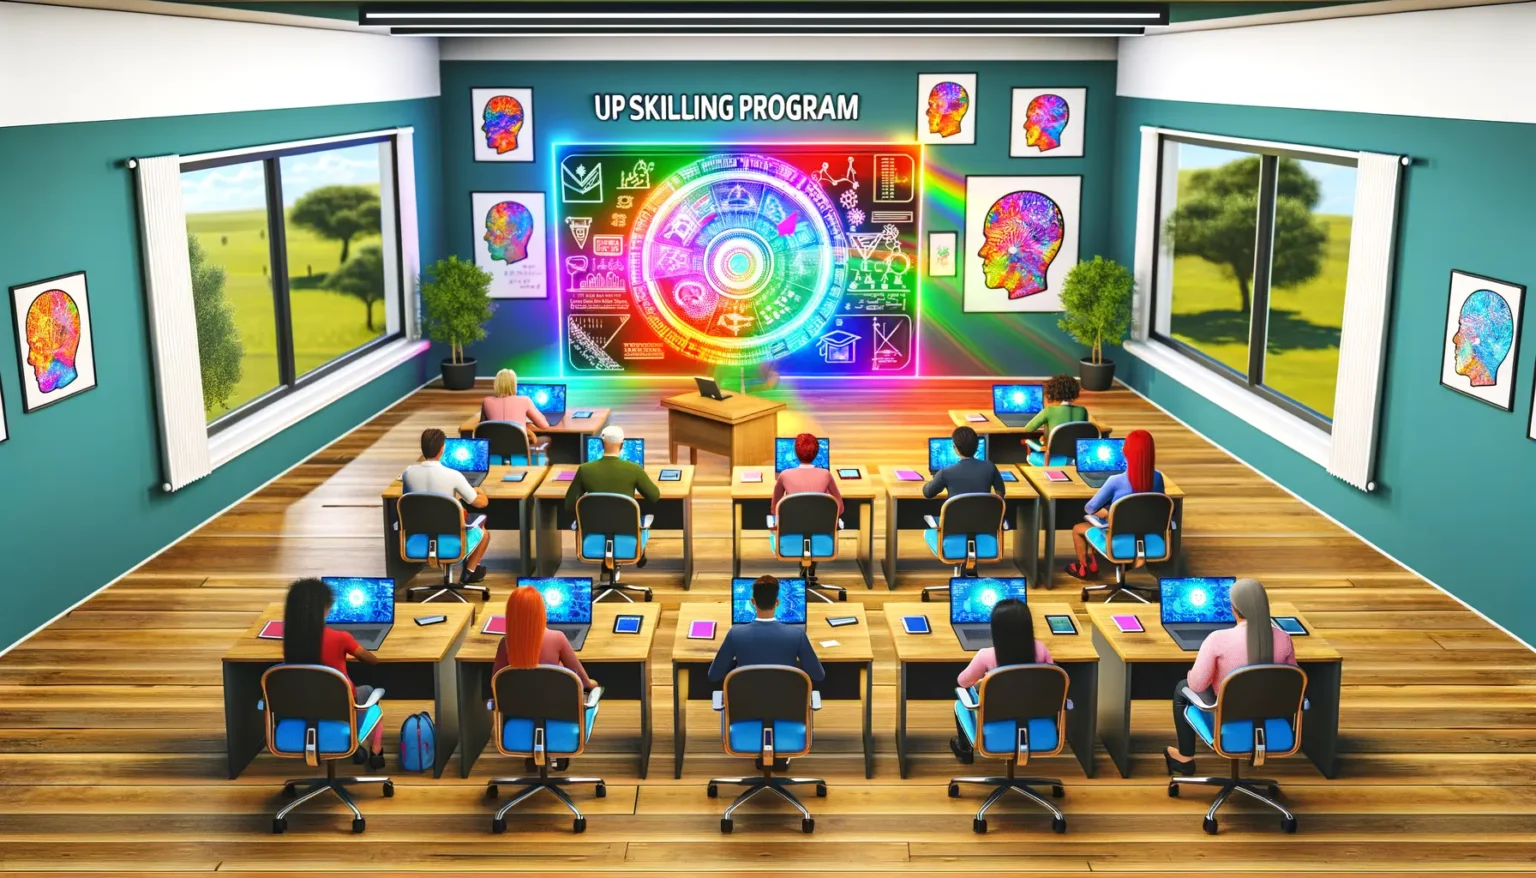 Ein modern gestaltetes Klassenzimmer mit mehreren Personen, die an Computern arbeiten, mit bunten grafischen Darstellungen an den Wänden und einem großen, farbenfrohen Rad mit verschiedenen Symbolen, welches das "Up Skilling Program" anzeigt, an der Stirnwand. Außerhalb der Fenster ist eine idyllische Landschaft zu sehen.